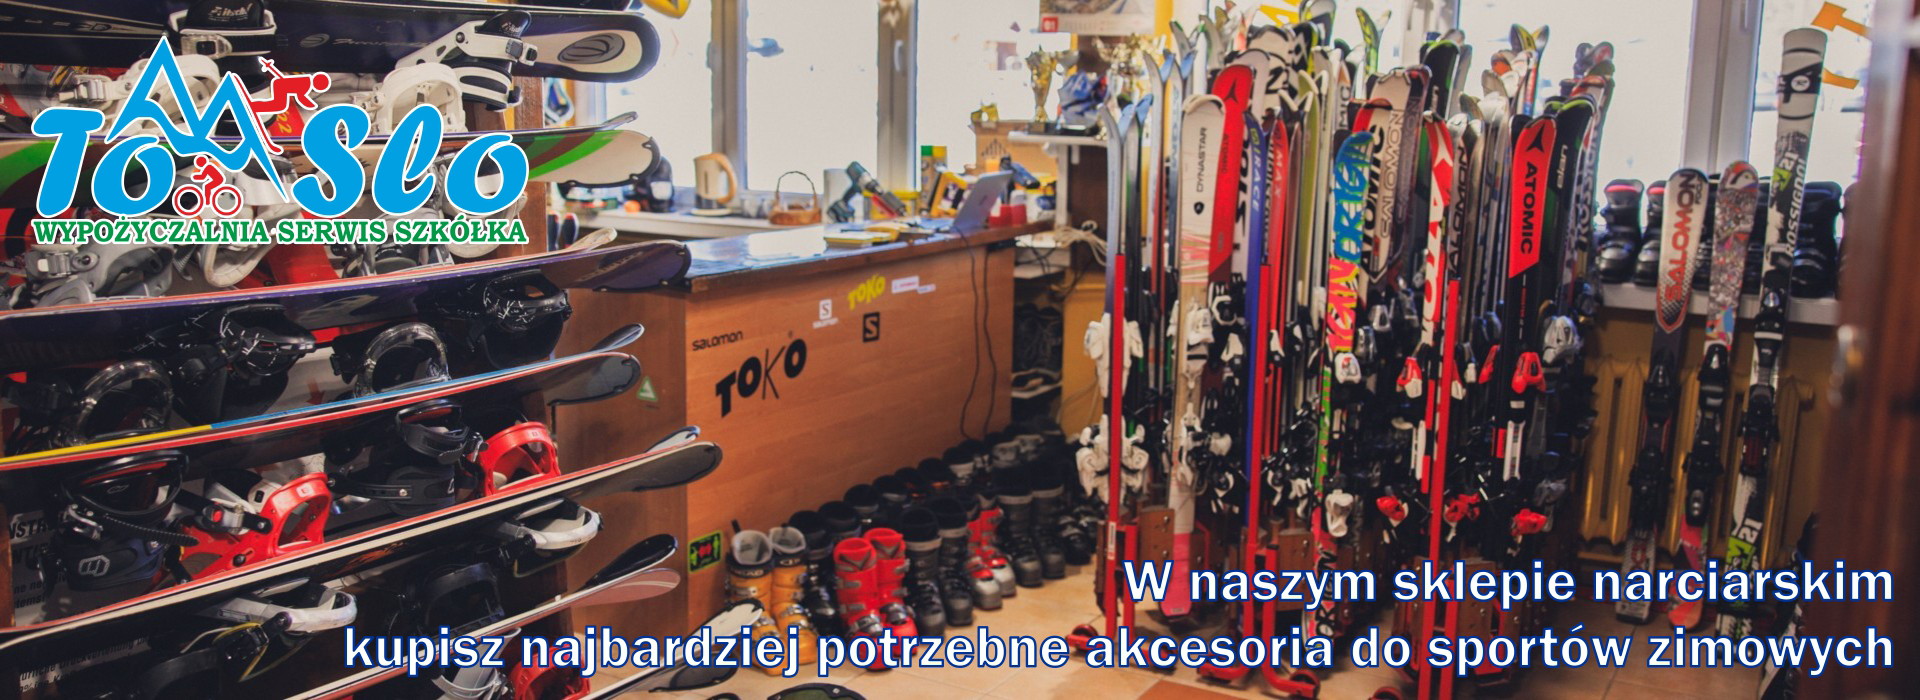 tomslo.pl - Wypożyczalnia, serwis i szkółka narciarska na Górze Żar